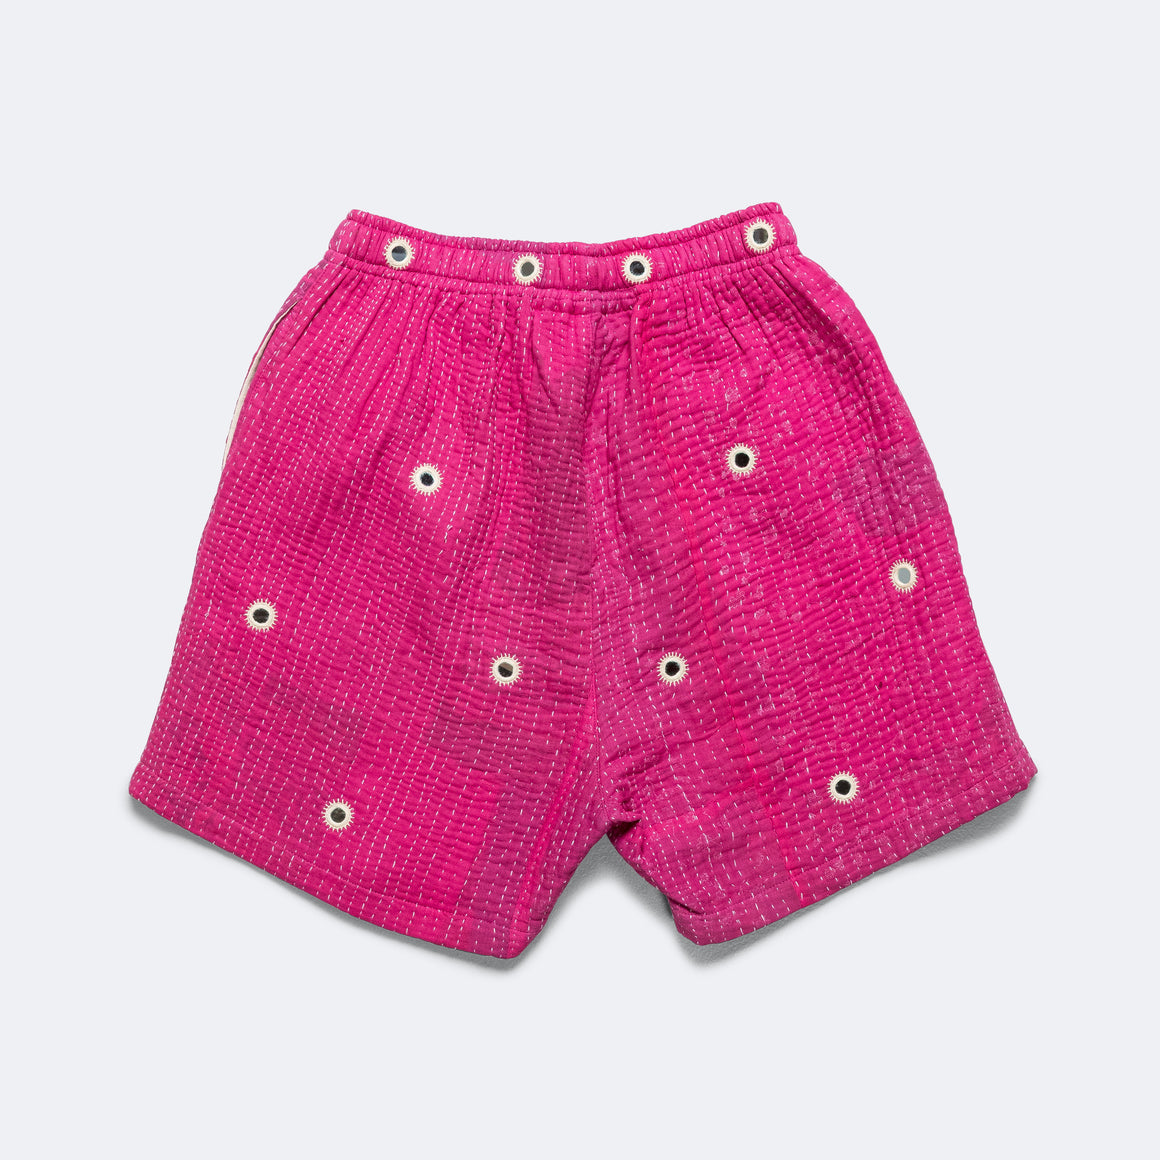 Vintage Kantha Overdye Shorts - Pink/Mirrors